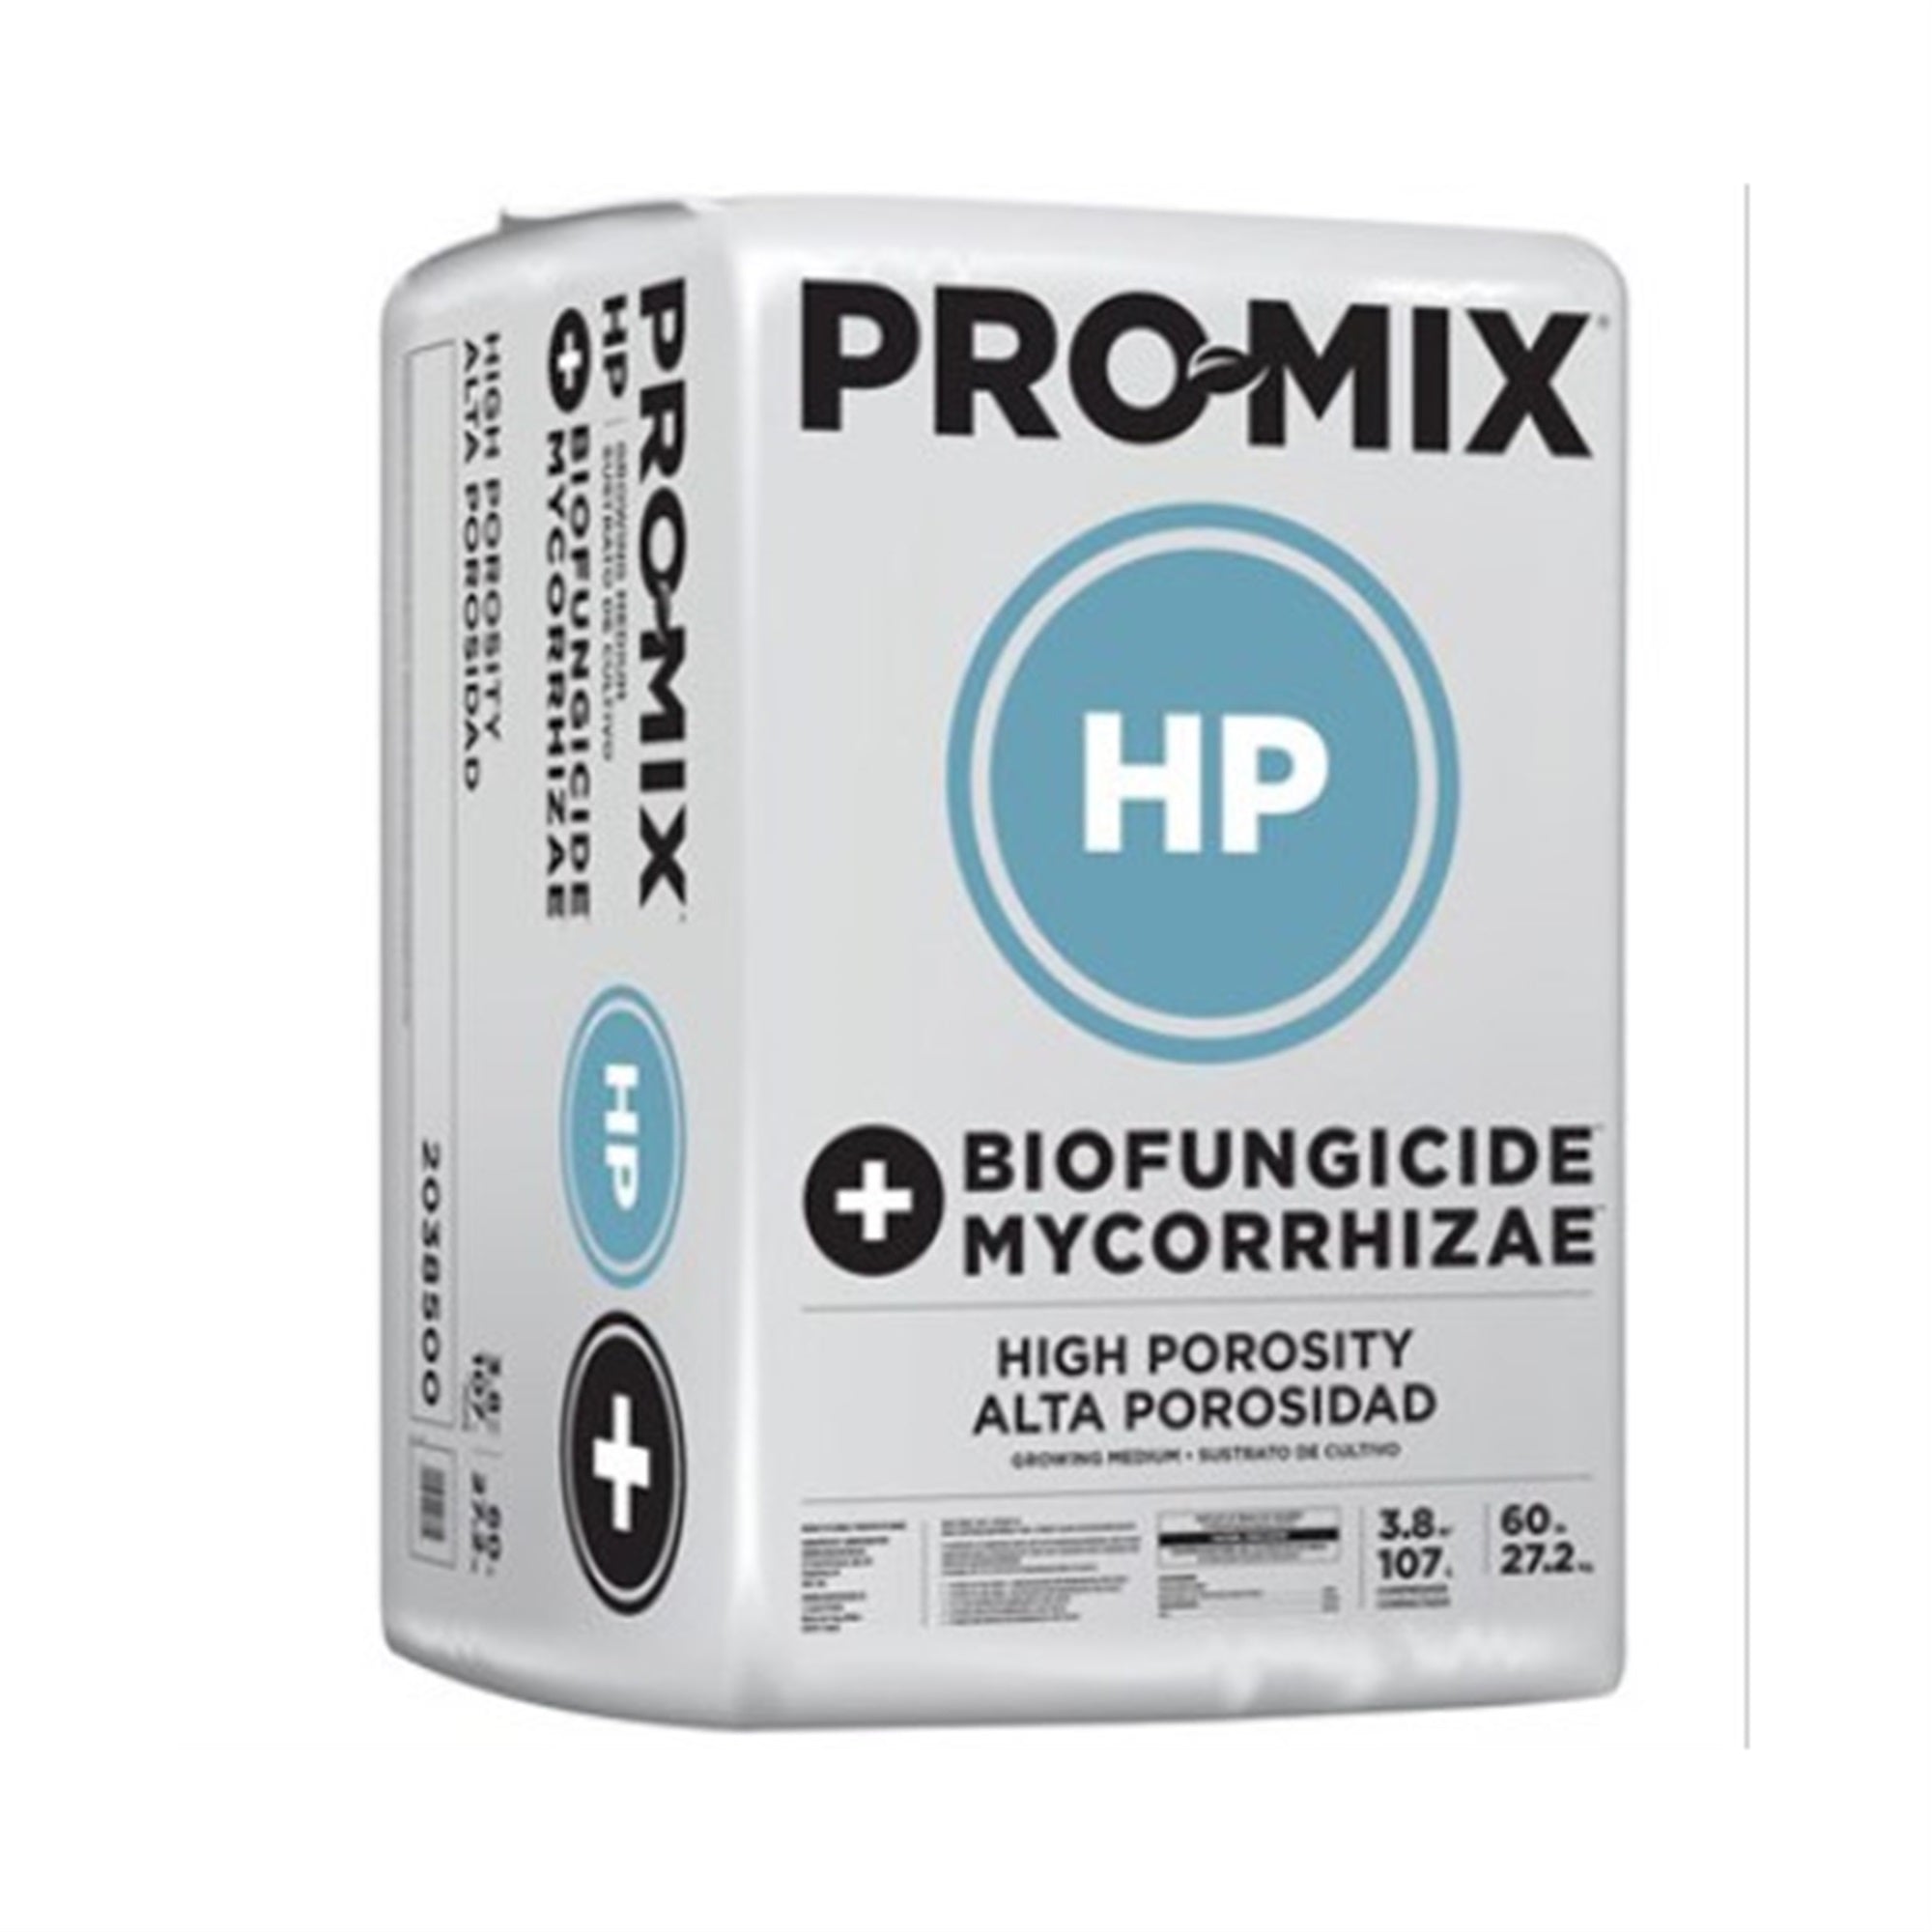 Premier PRO-MIX High Porosity, Biofungicide + Mycorrhizae 3.8 CF